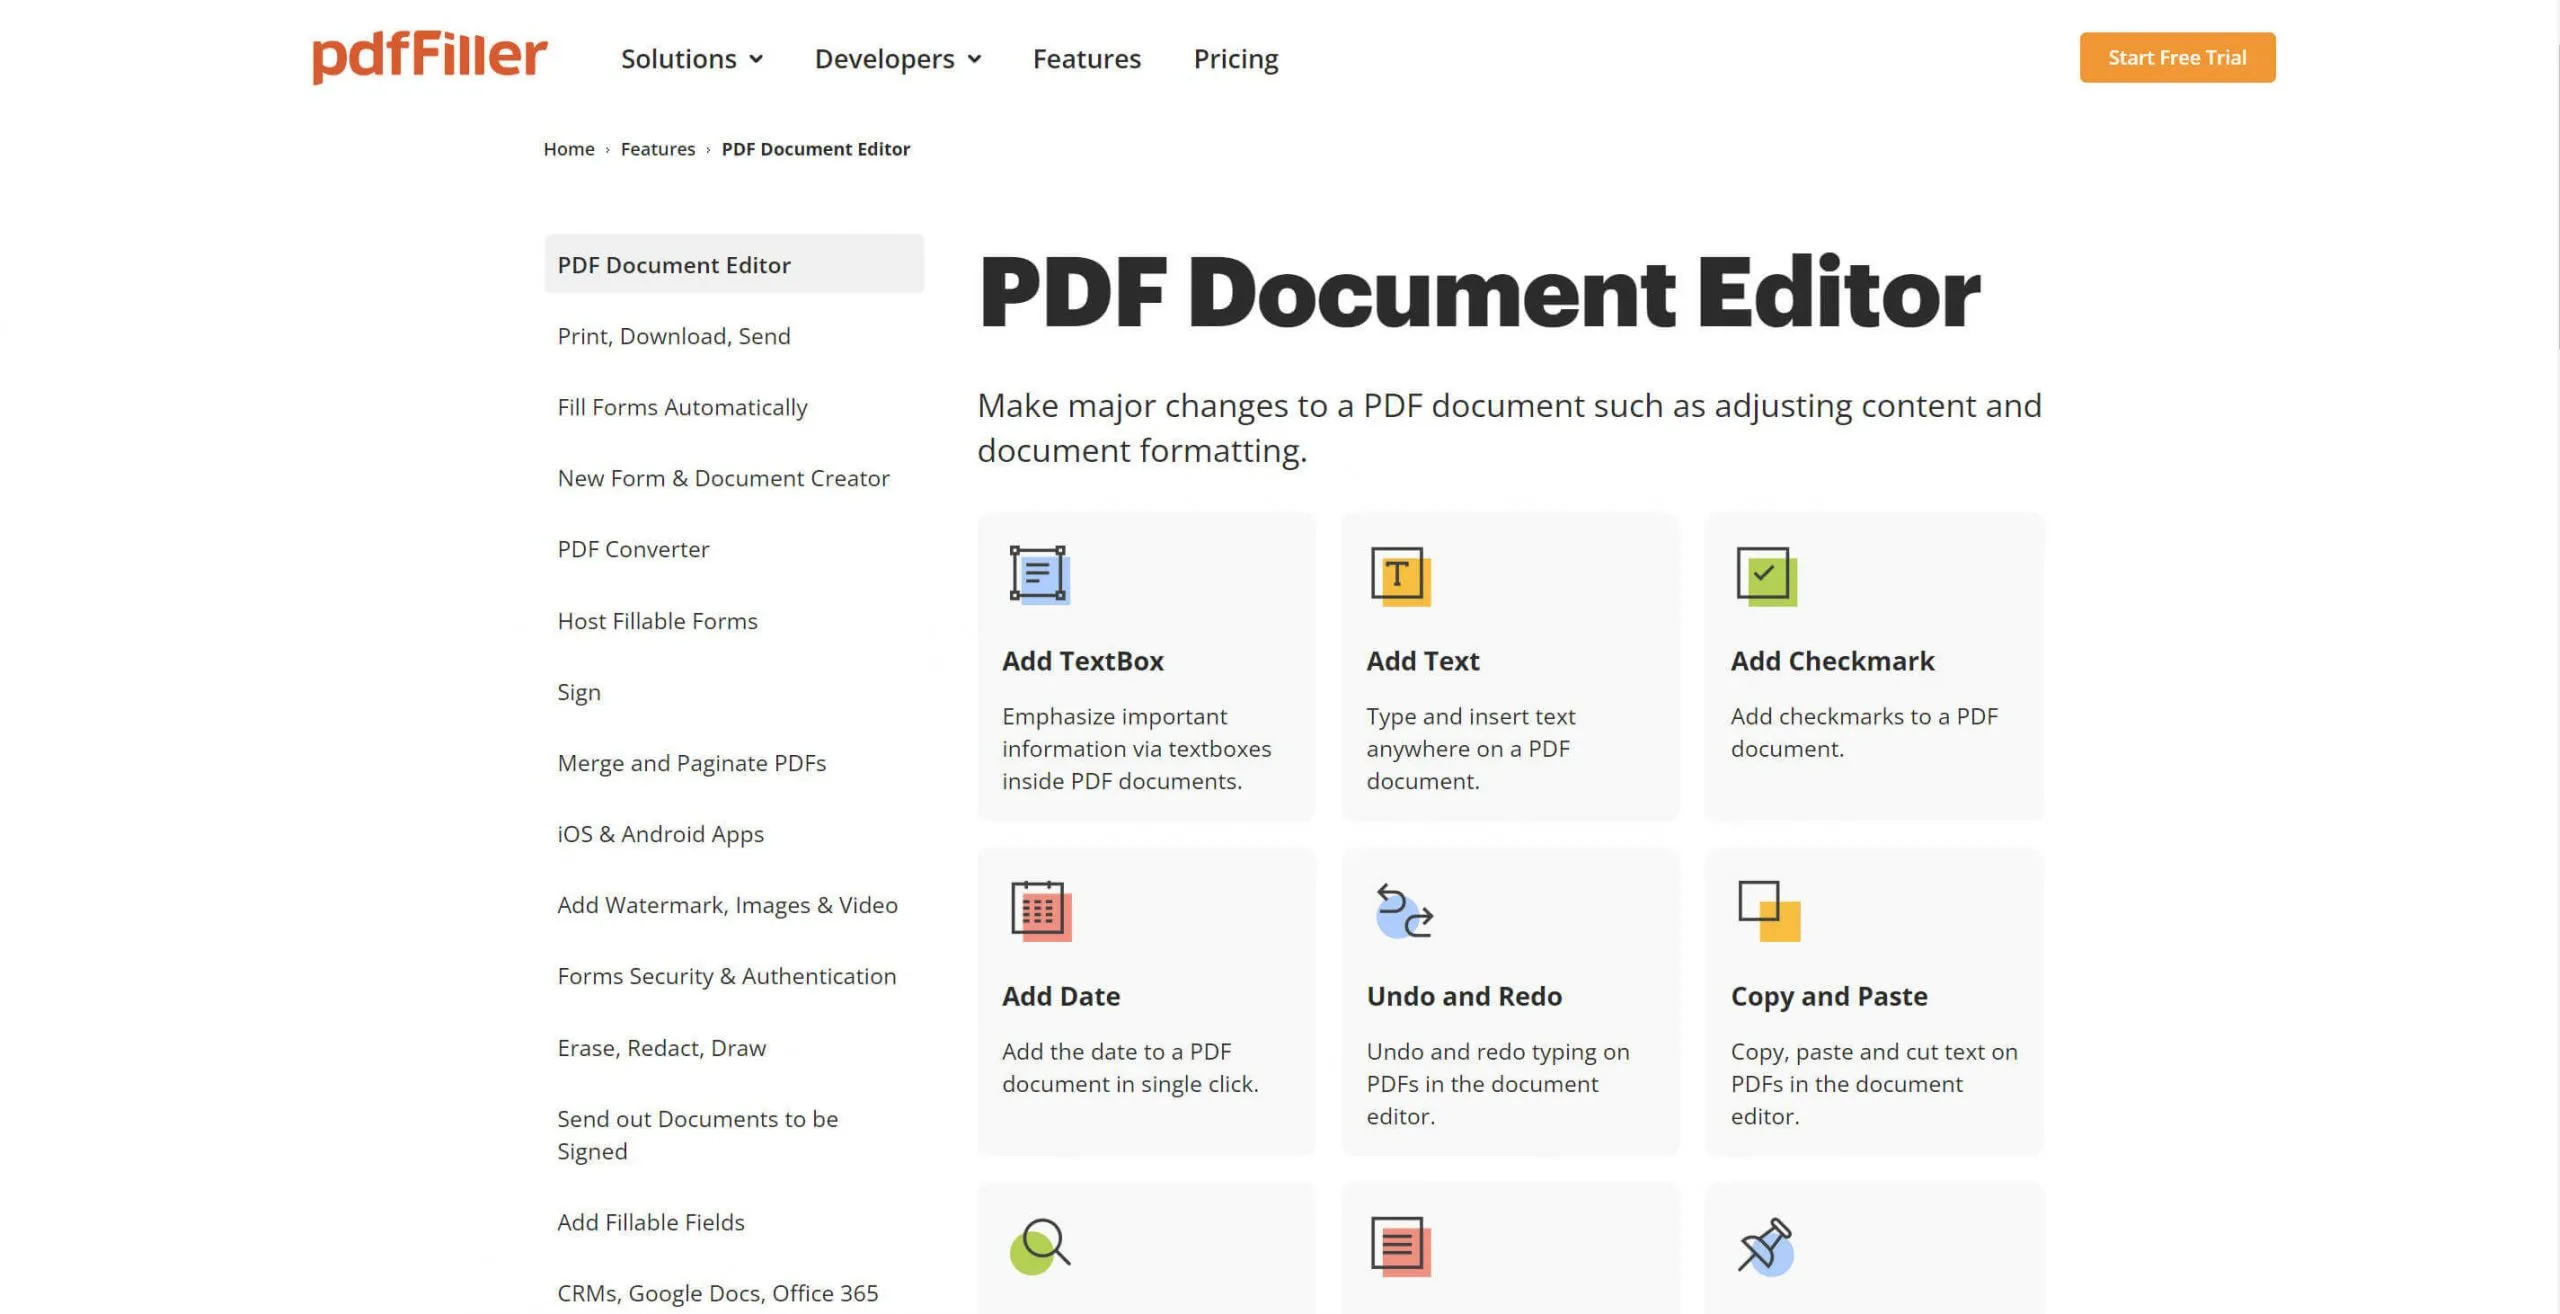 pdffiller tools